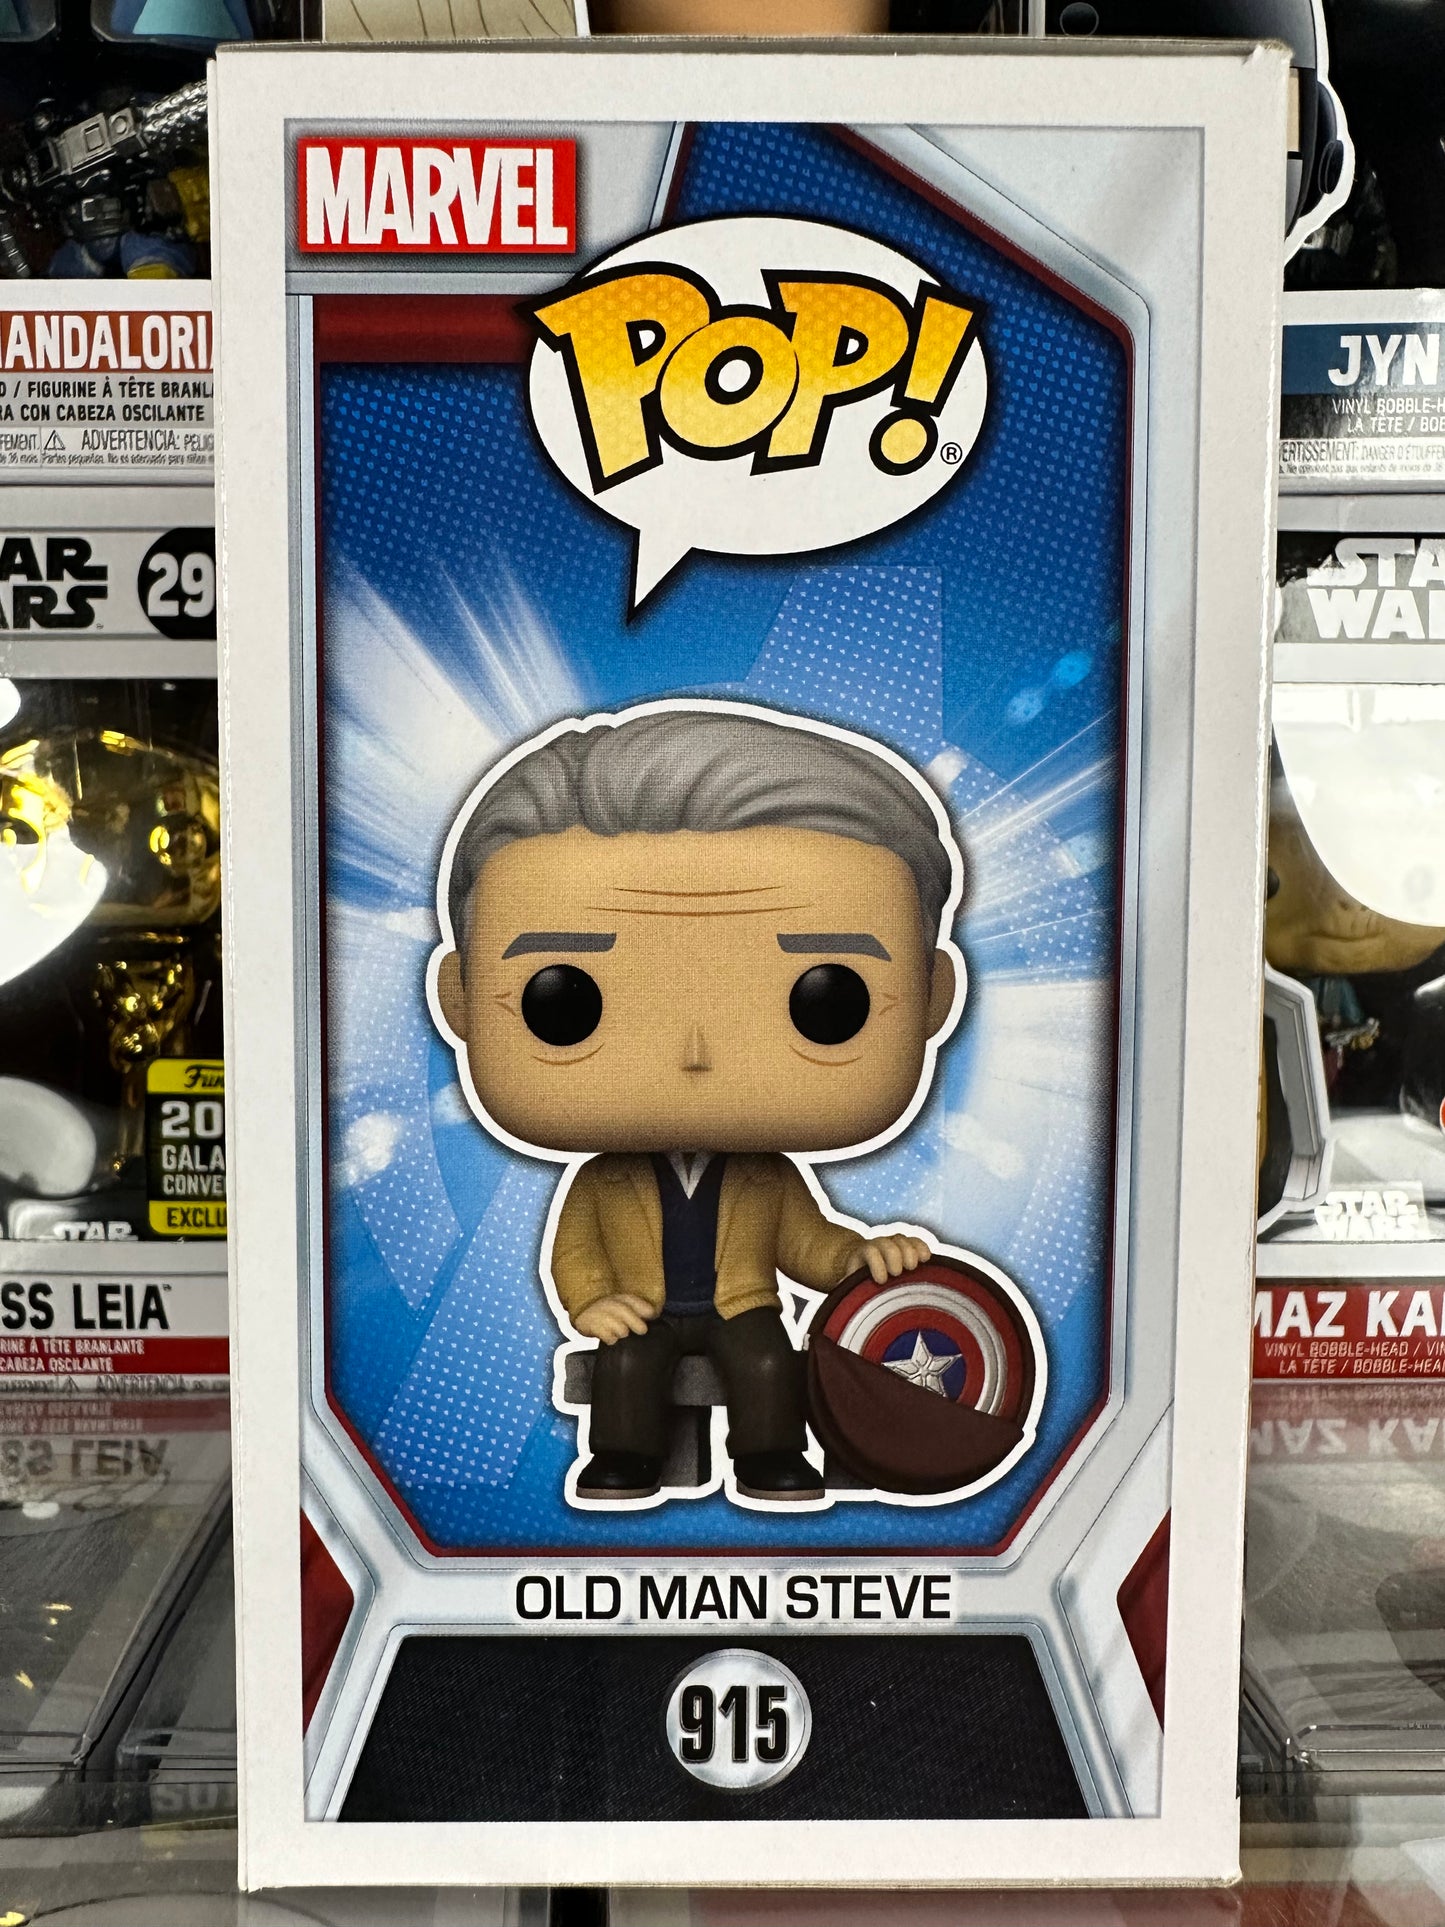 Marvel Avengers Endgame - Old Man Steve (915)